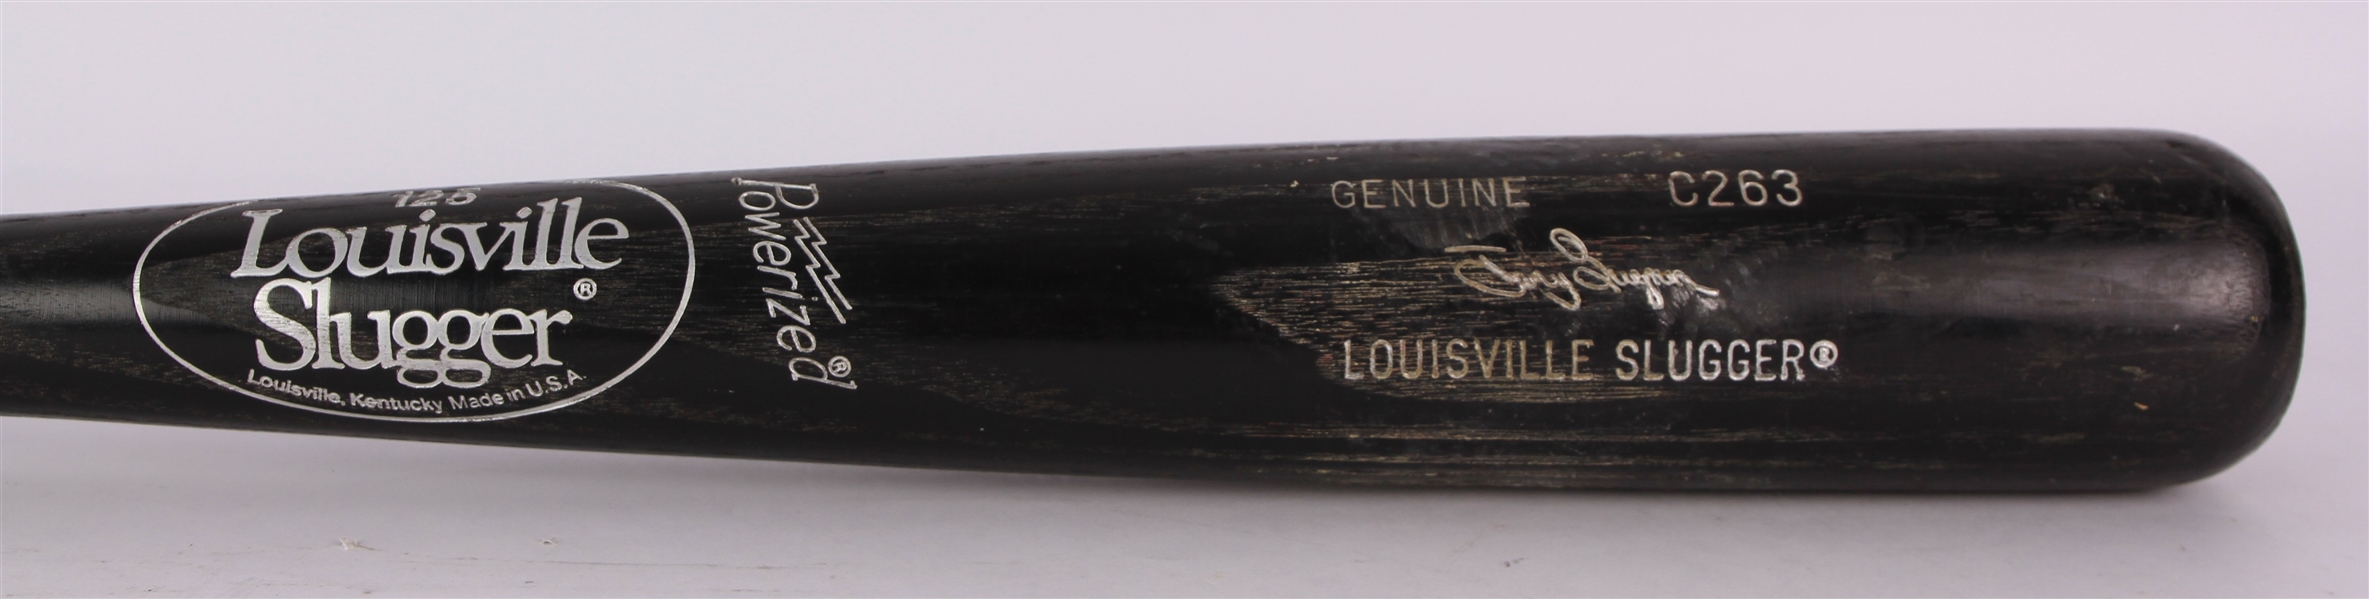 1988-89 Tony Gwynn San Diego Padres Louisville Slugger Professional Model Game Used Bat (MEARS A10) NL Batting Crown Seasons